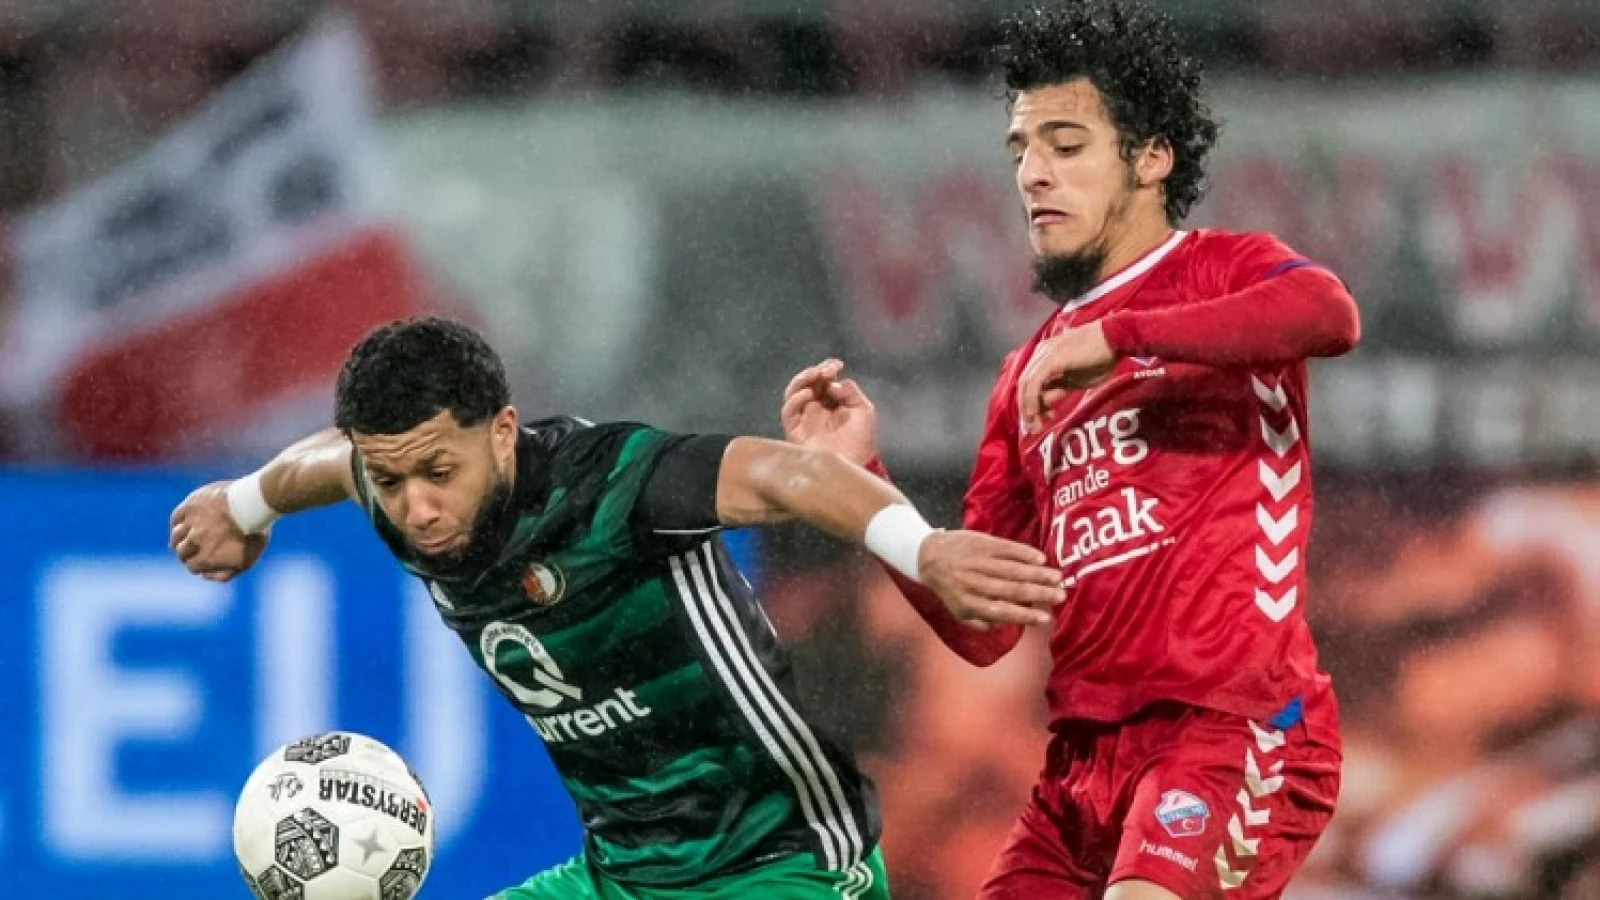 Ayoub lacherig over trainingskamp Feyenoord: 'Wij zijn het bos in gegaan'